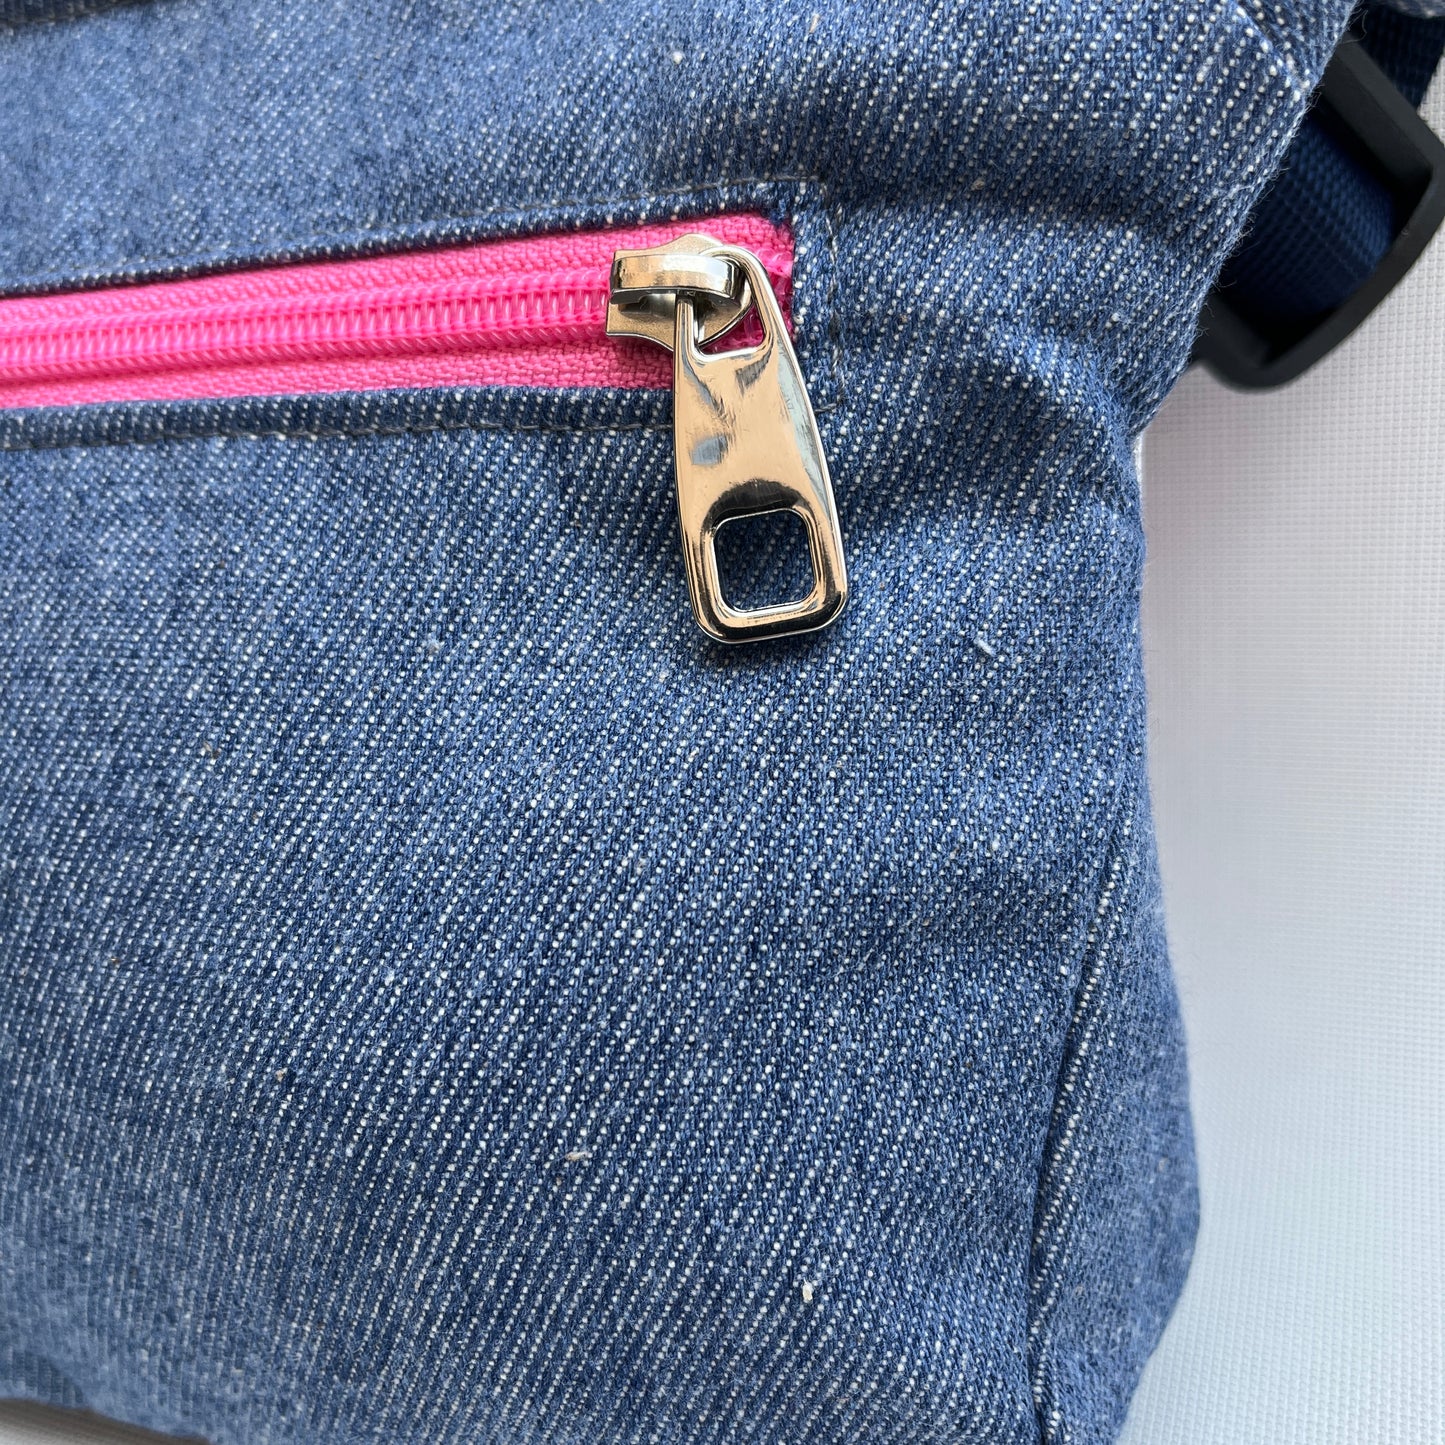 Special Crazy Jeans Pink + Gesäßtasche Einzelstück Nr. 11682